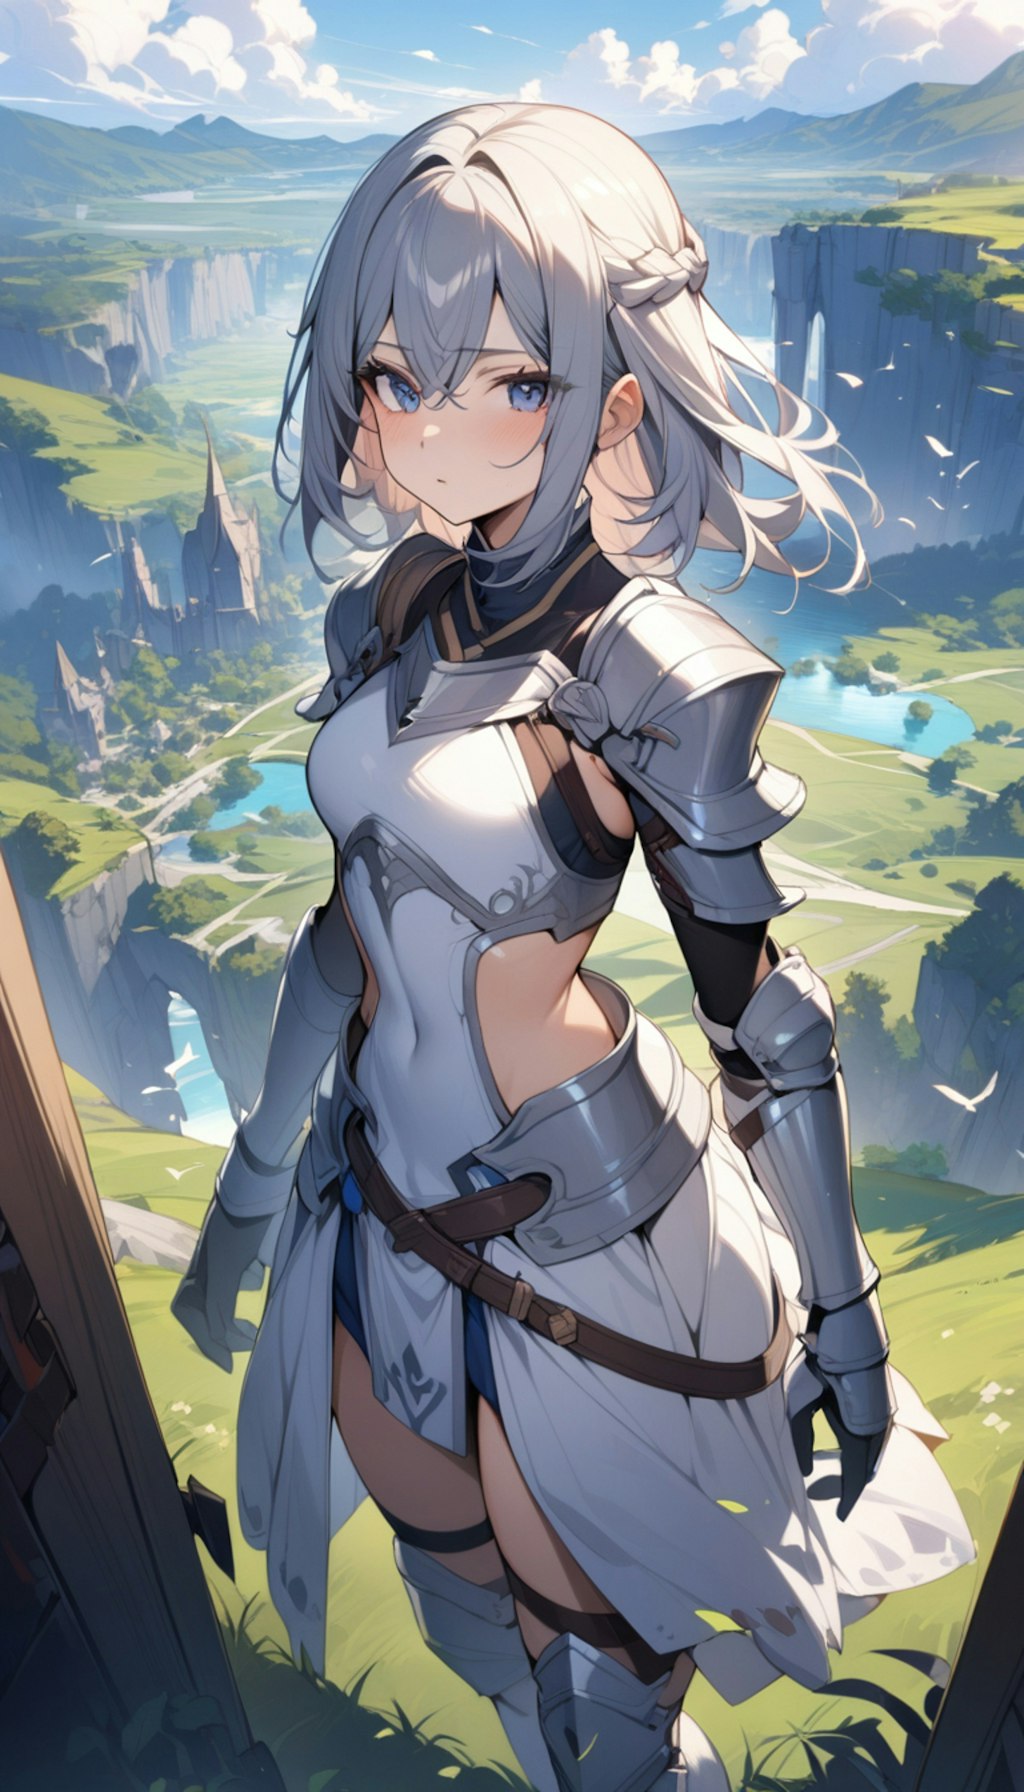 ファンタジー風景の少女騎士